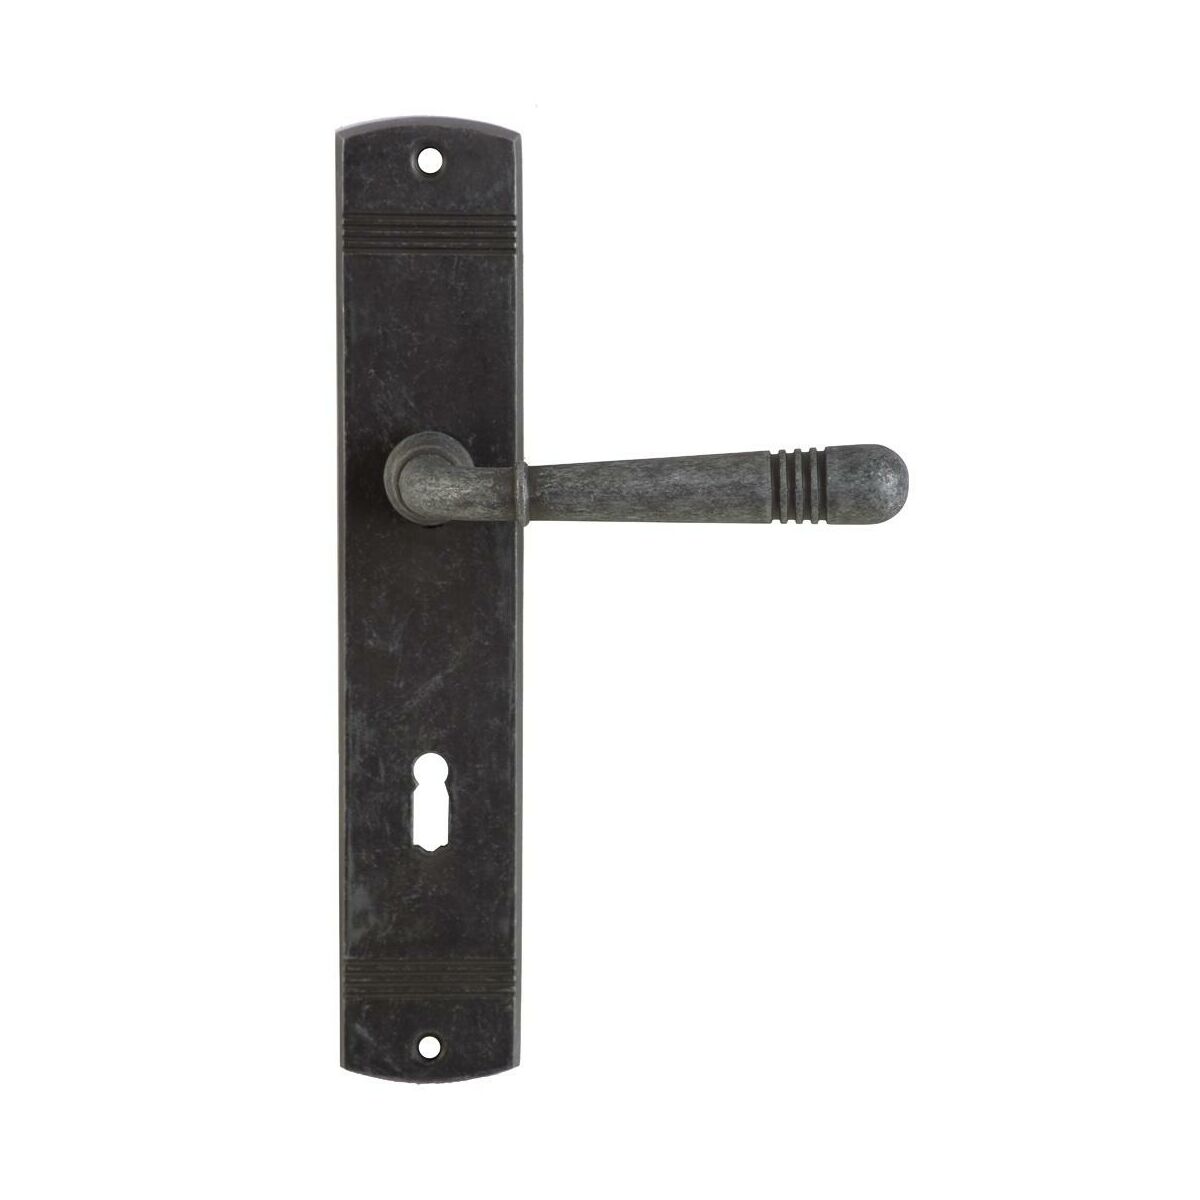 Klamka drzwiowa z długim szyldem pod klucz Loft 72 Nikiel antyczny Domino